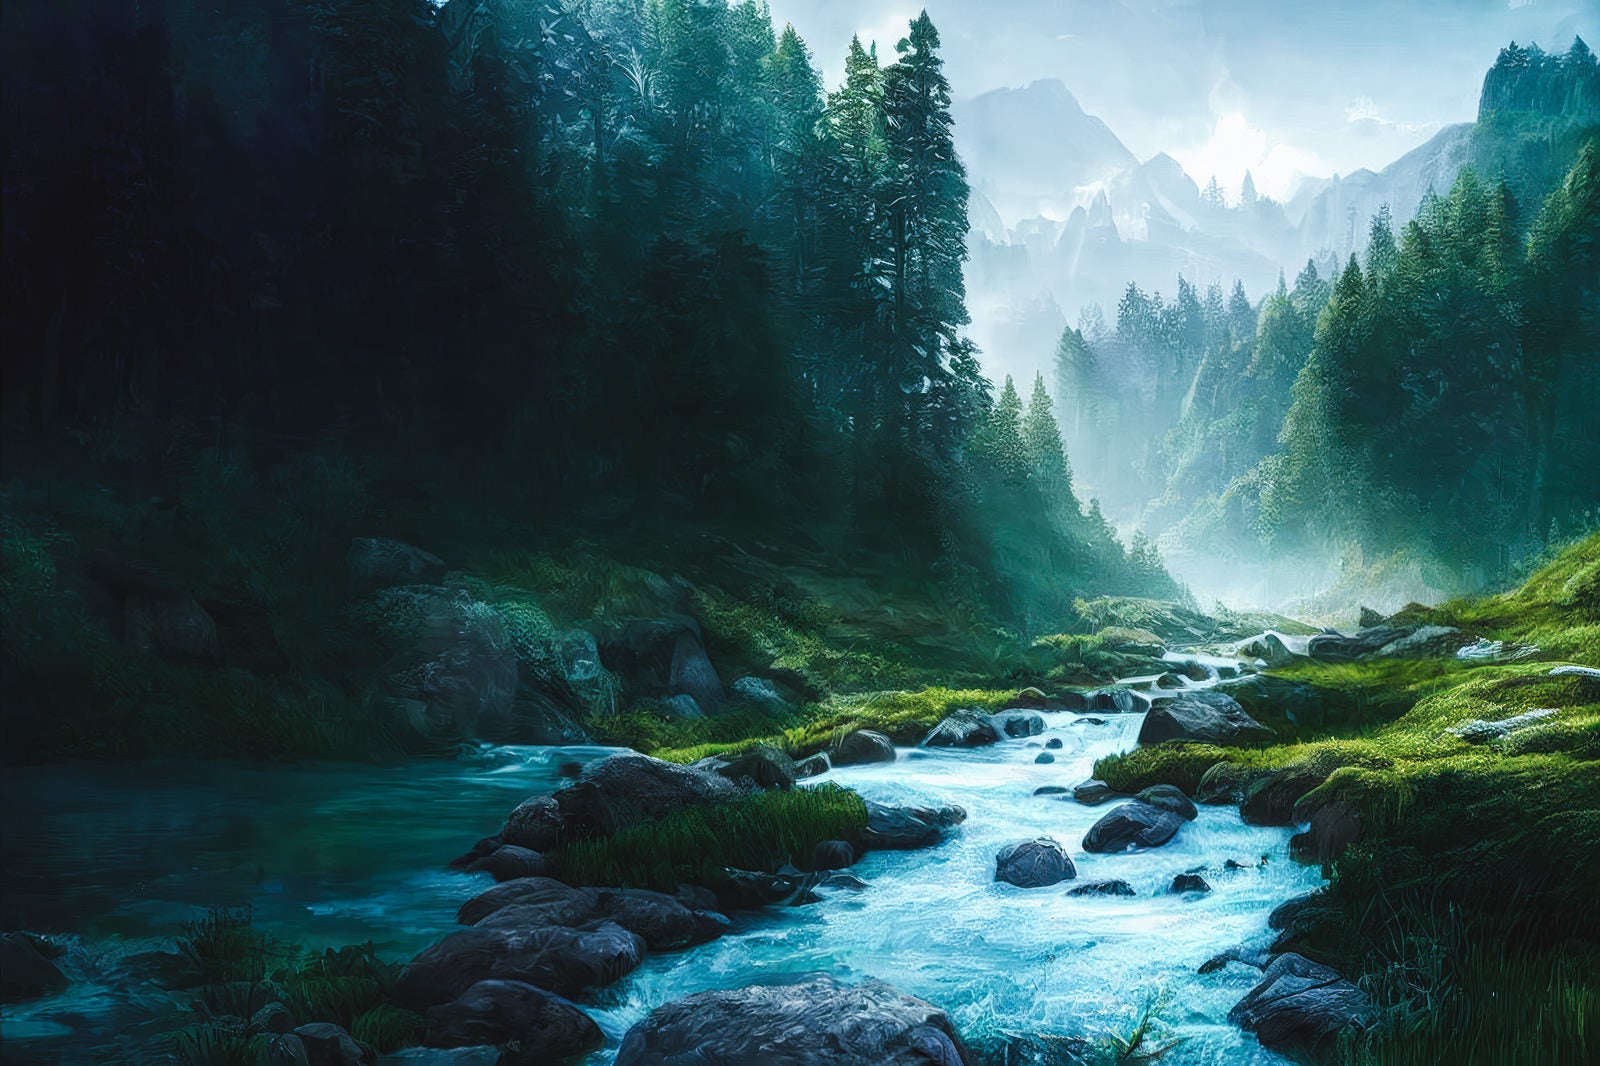 「川辺の風景から見える自然のリズム」の写真